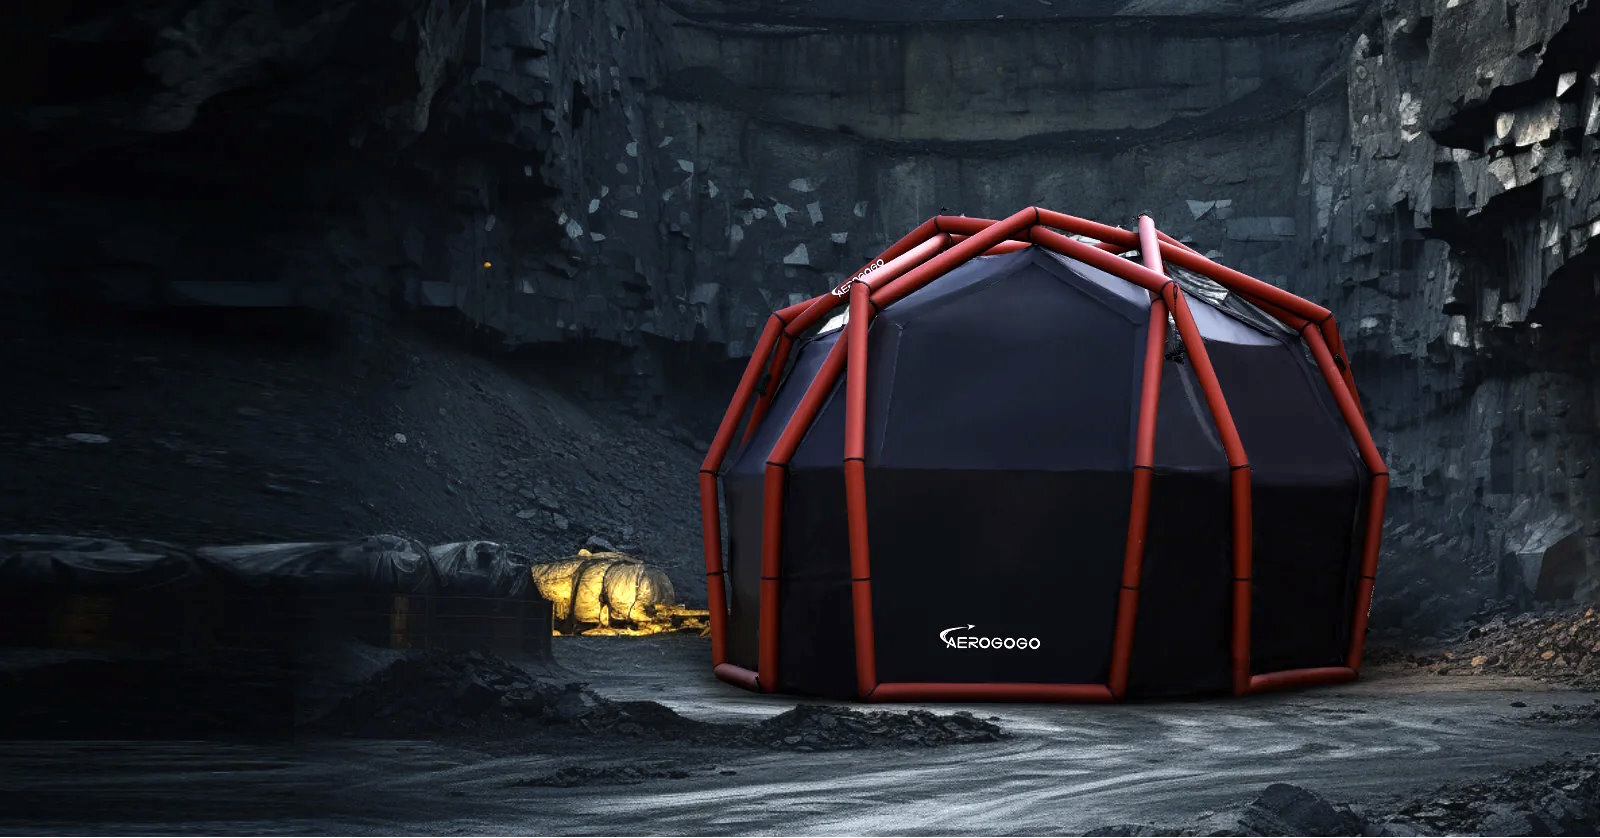 L’Aerotent est une tente avec une structure gonflable, qui se monte toute seule en quelques minutes grâce à une pompe. © Aerogogo